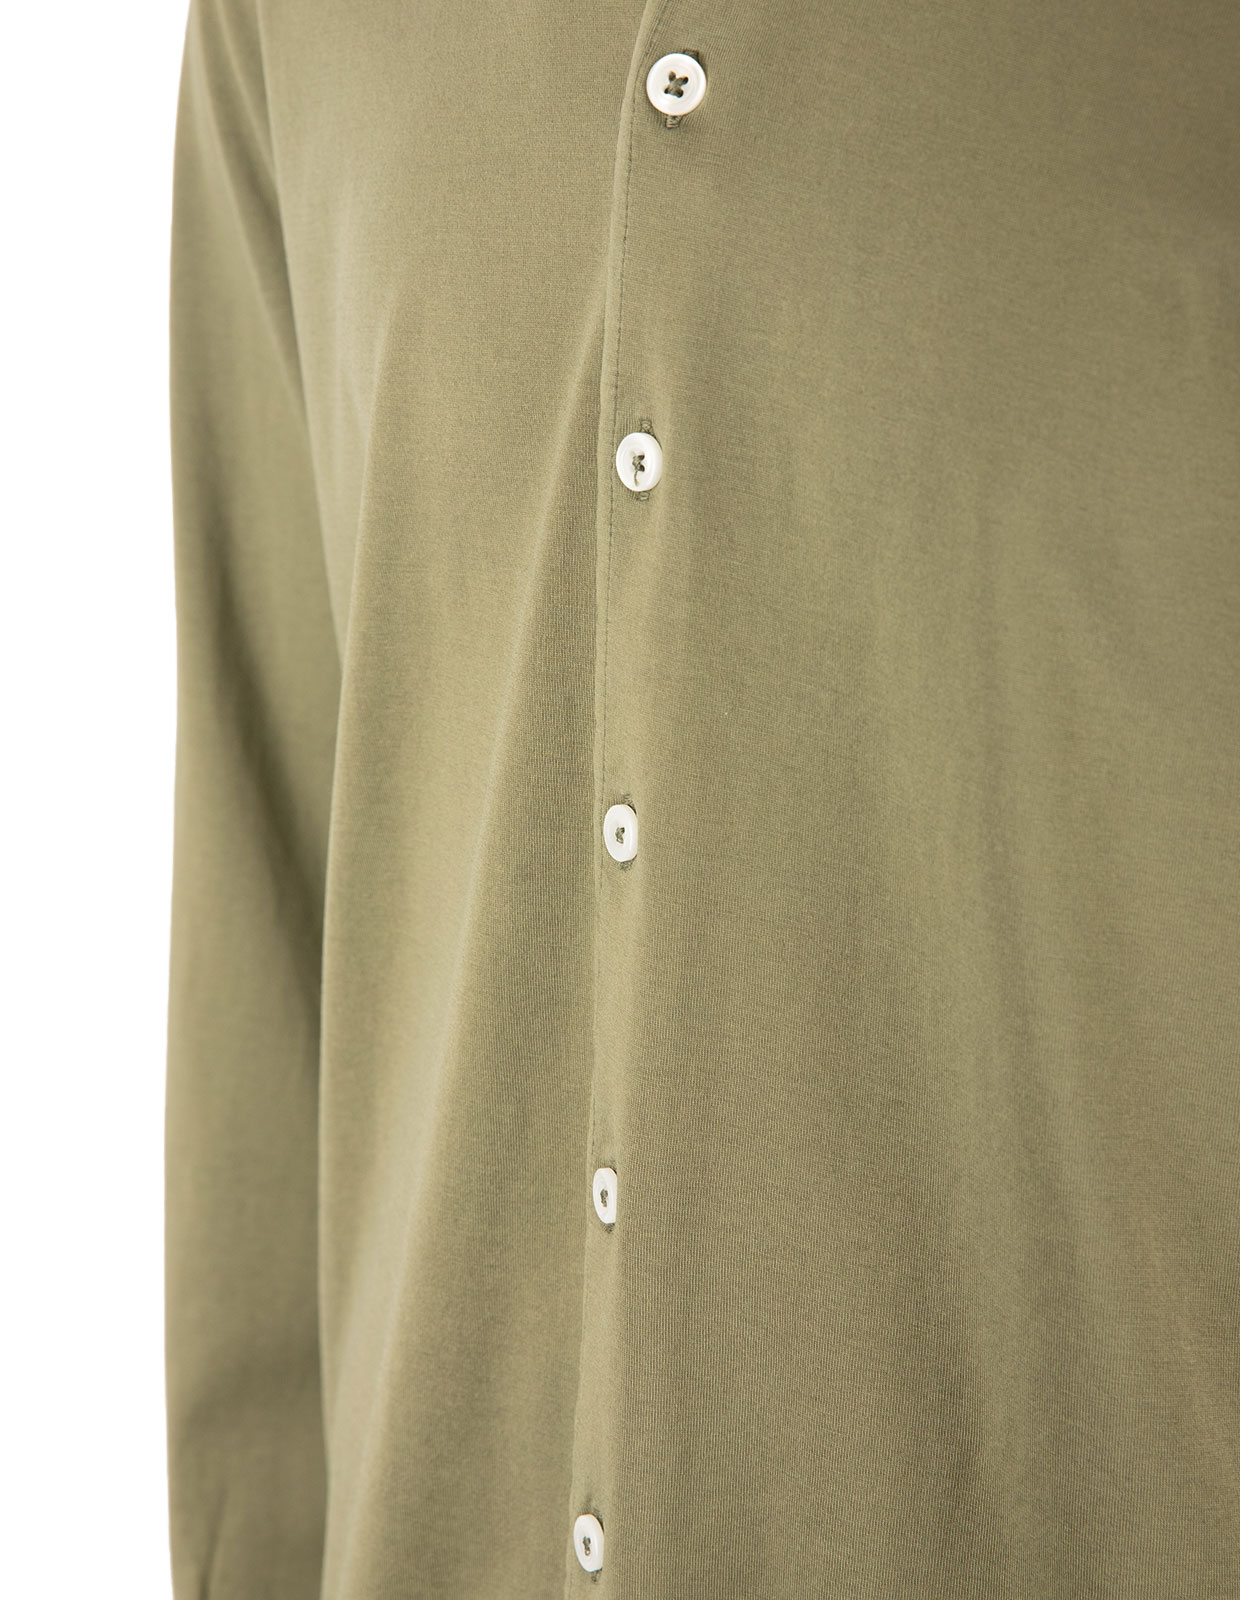 Jerseyskjorta Bomull Olivgrön Stl 48